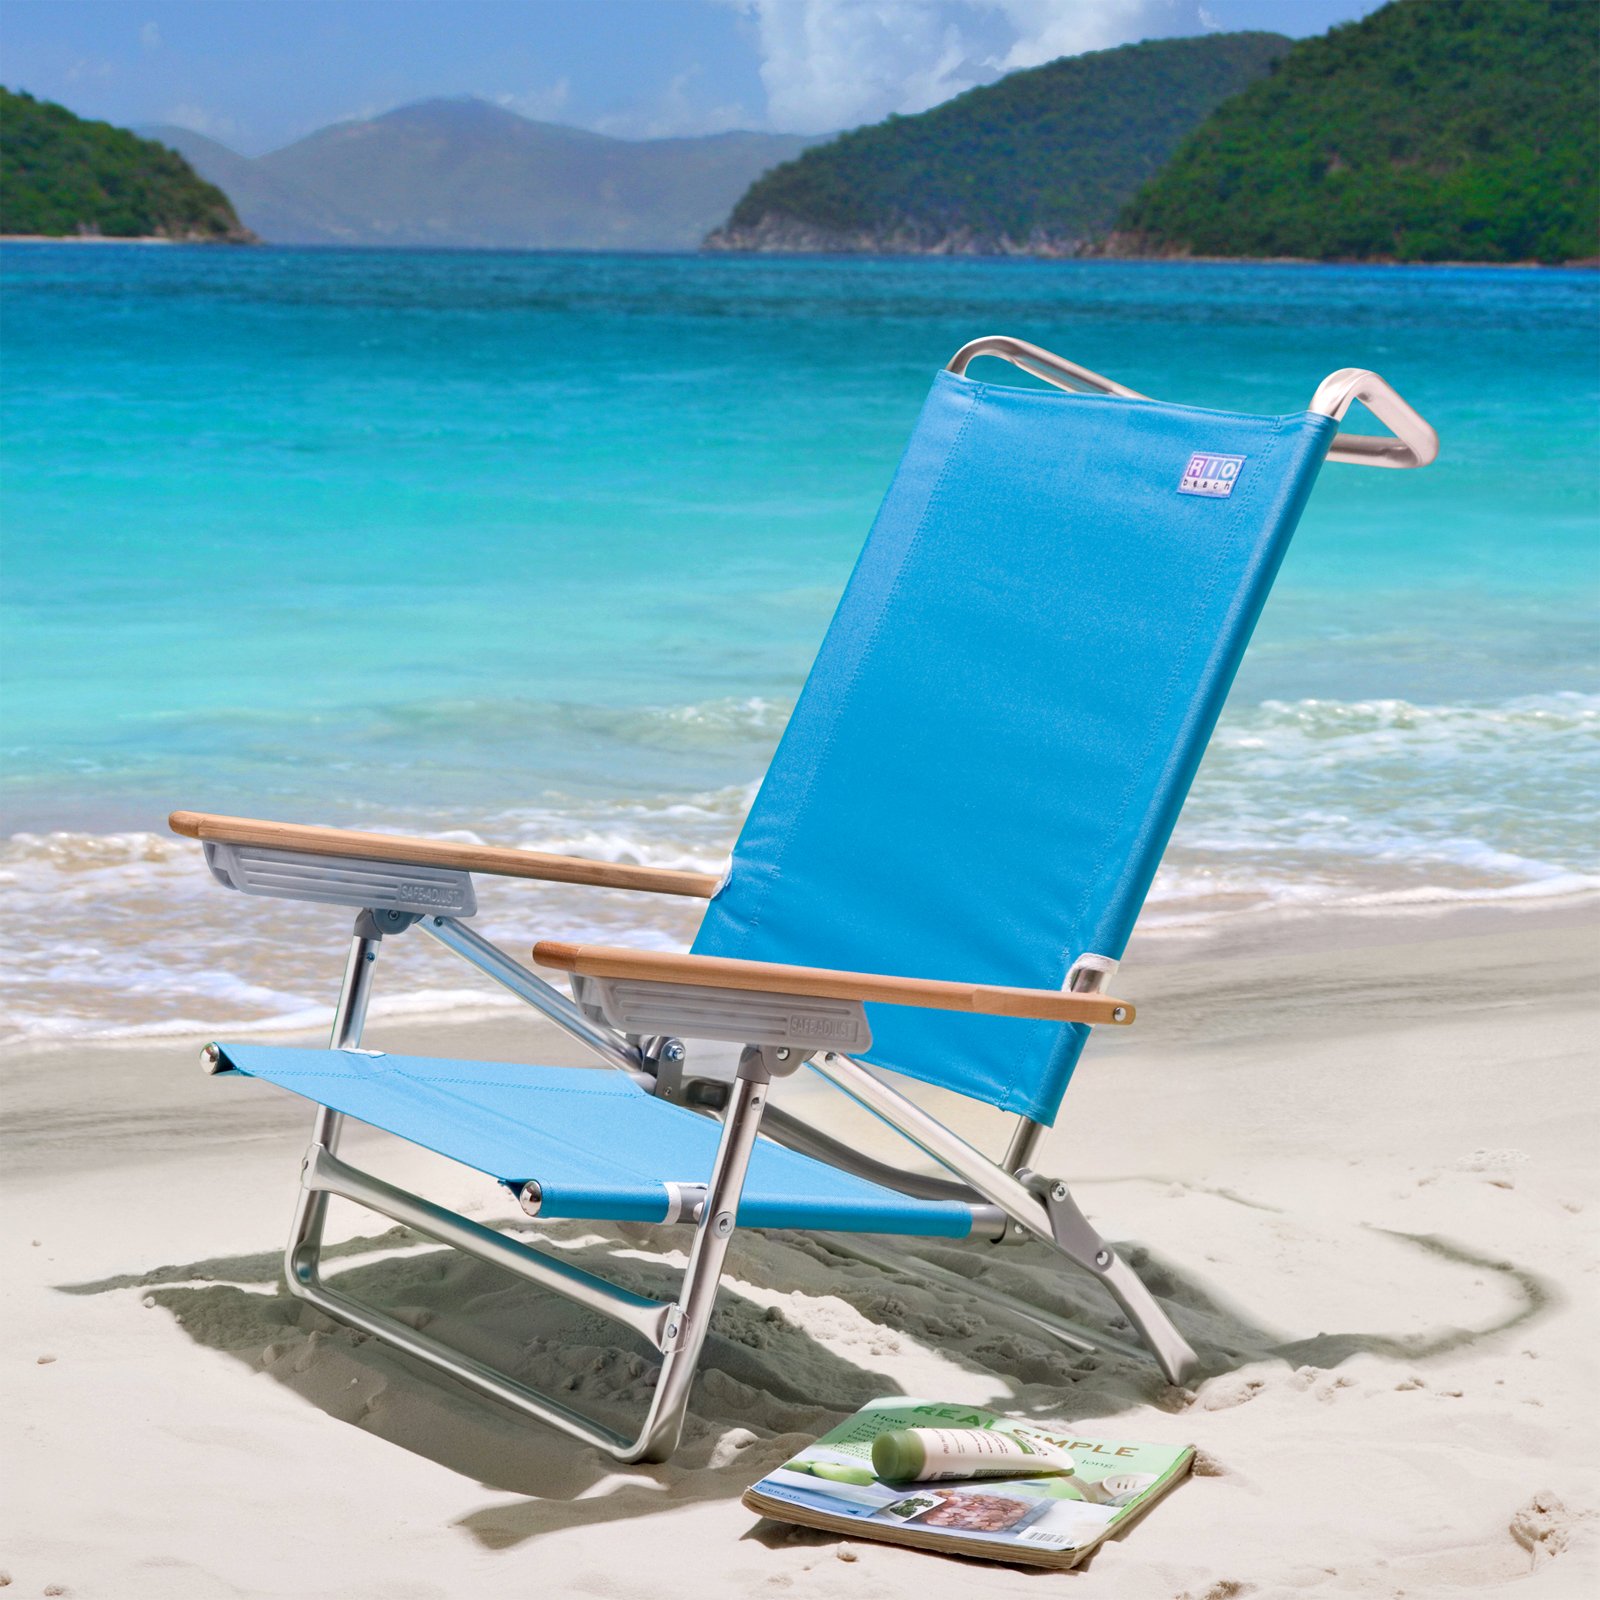 a chair at the beach